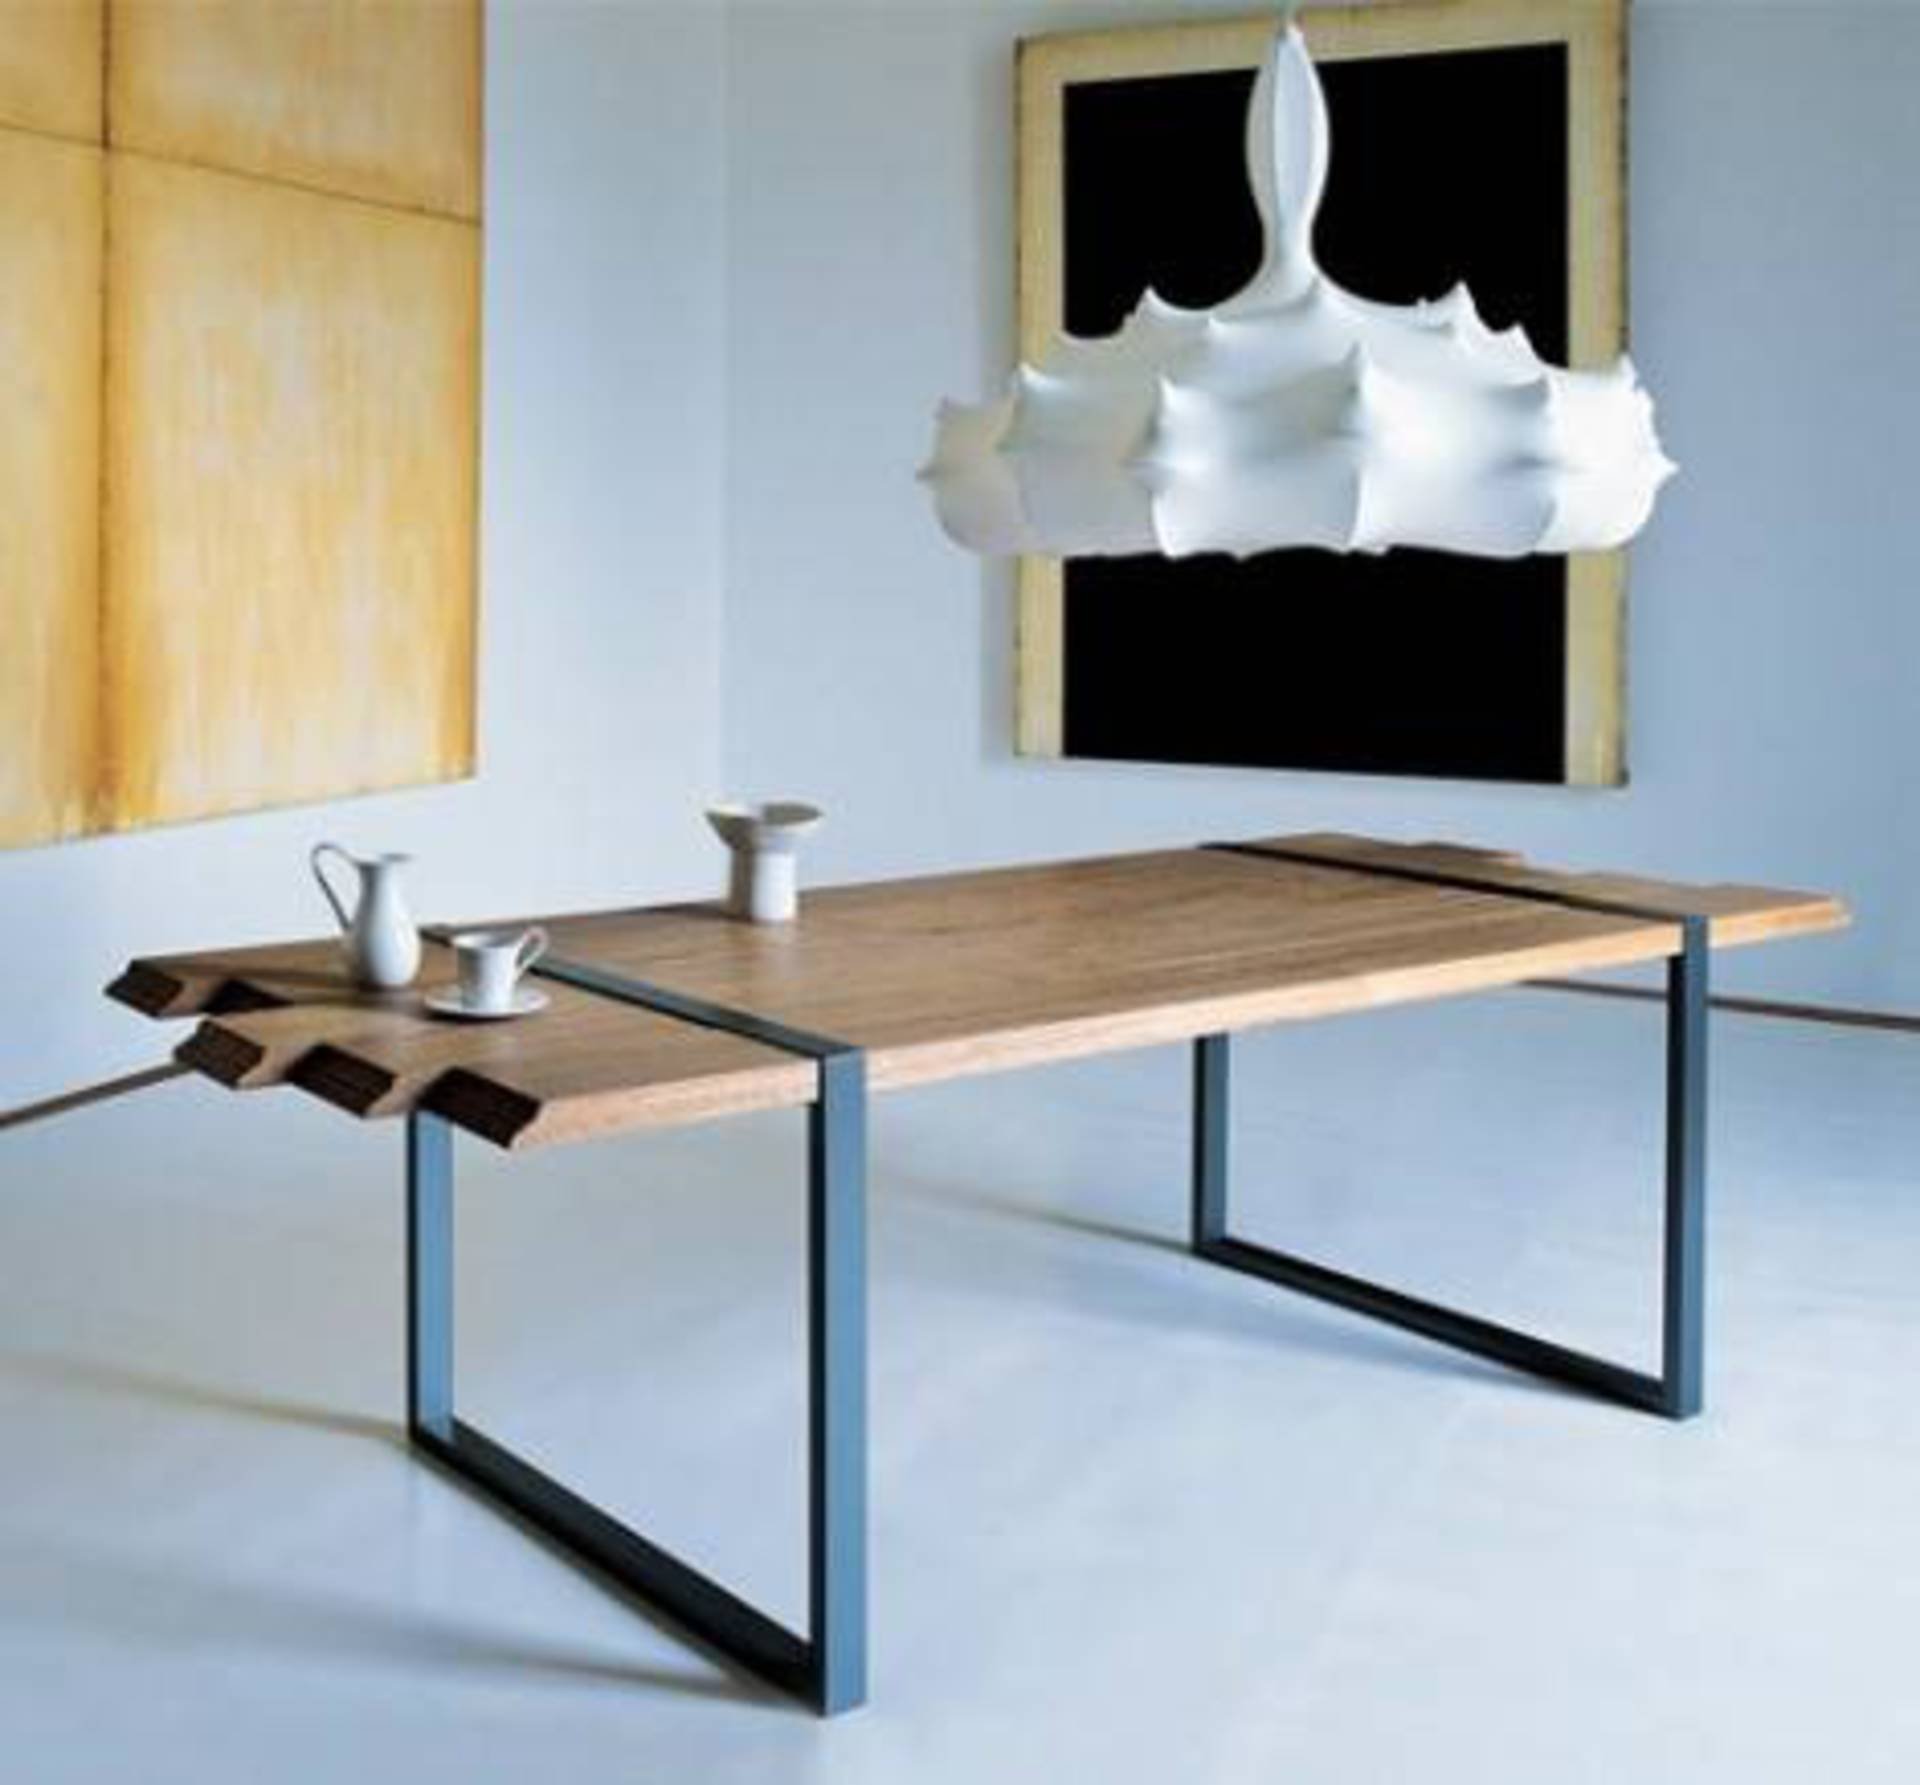 Сервис столики. Дизайнерские столы. Дизайнерская мебель из металла. Дизайнерский обеденный стол. Необычная мебель из металла.